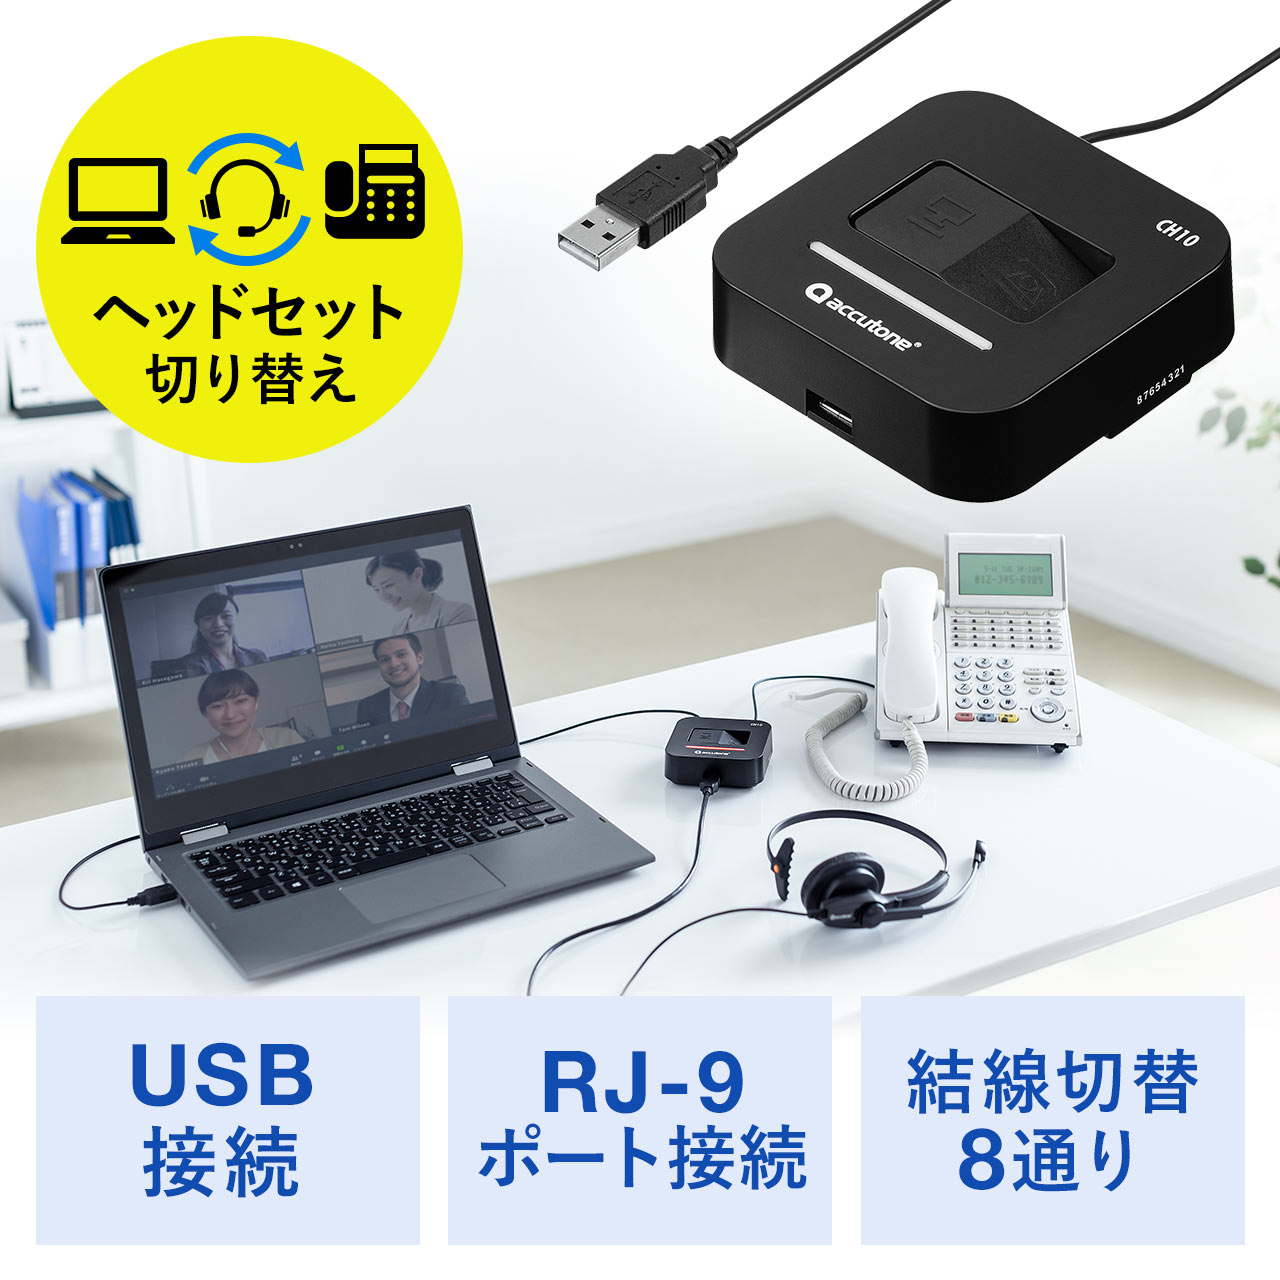 USBヘッドセット電話切替アダプタ 電話 PCヘッドセット 電話機 ビジネスホン 切替器 ハンズフリー RJ-9接続 USB 結線切り替え  400-HSAD001の販売商品 通販ならサンワダイレクト